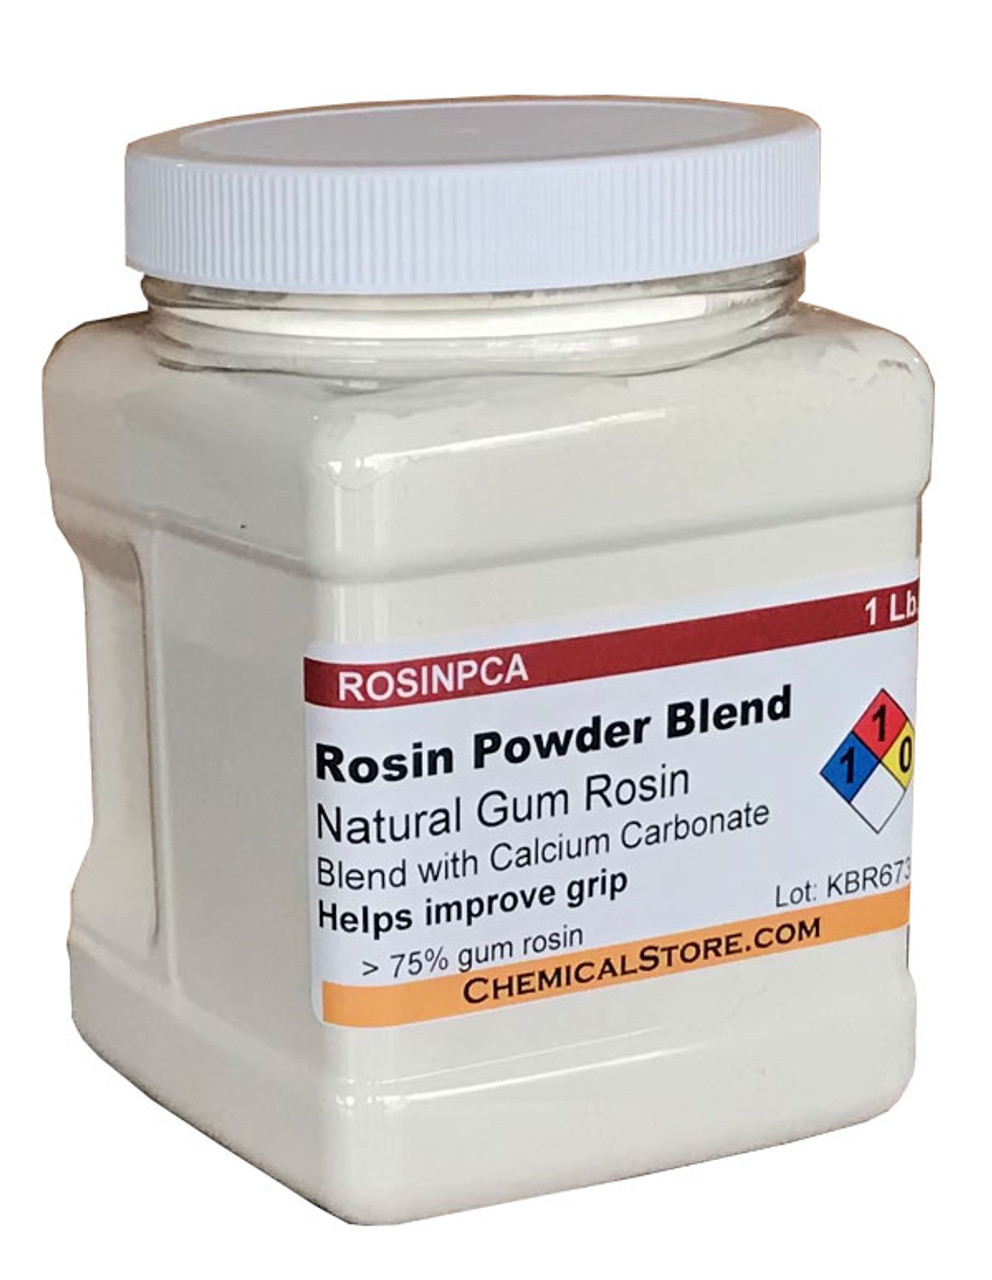 Rosin Powder Blend with Calcium Carbonate